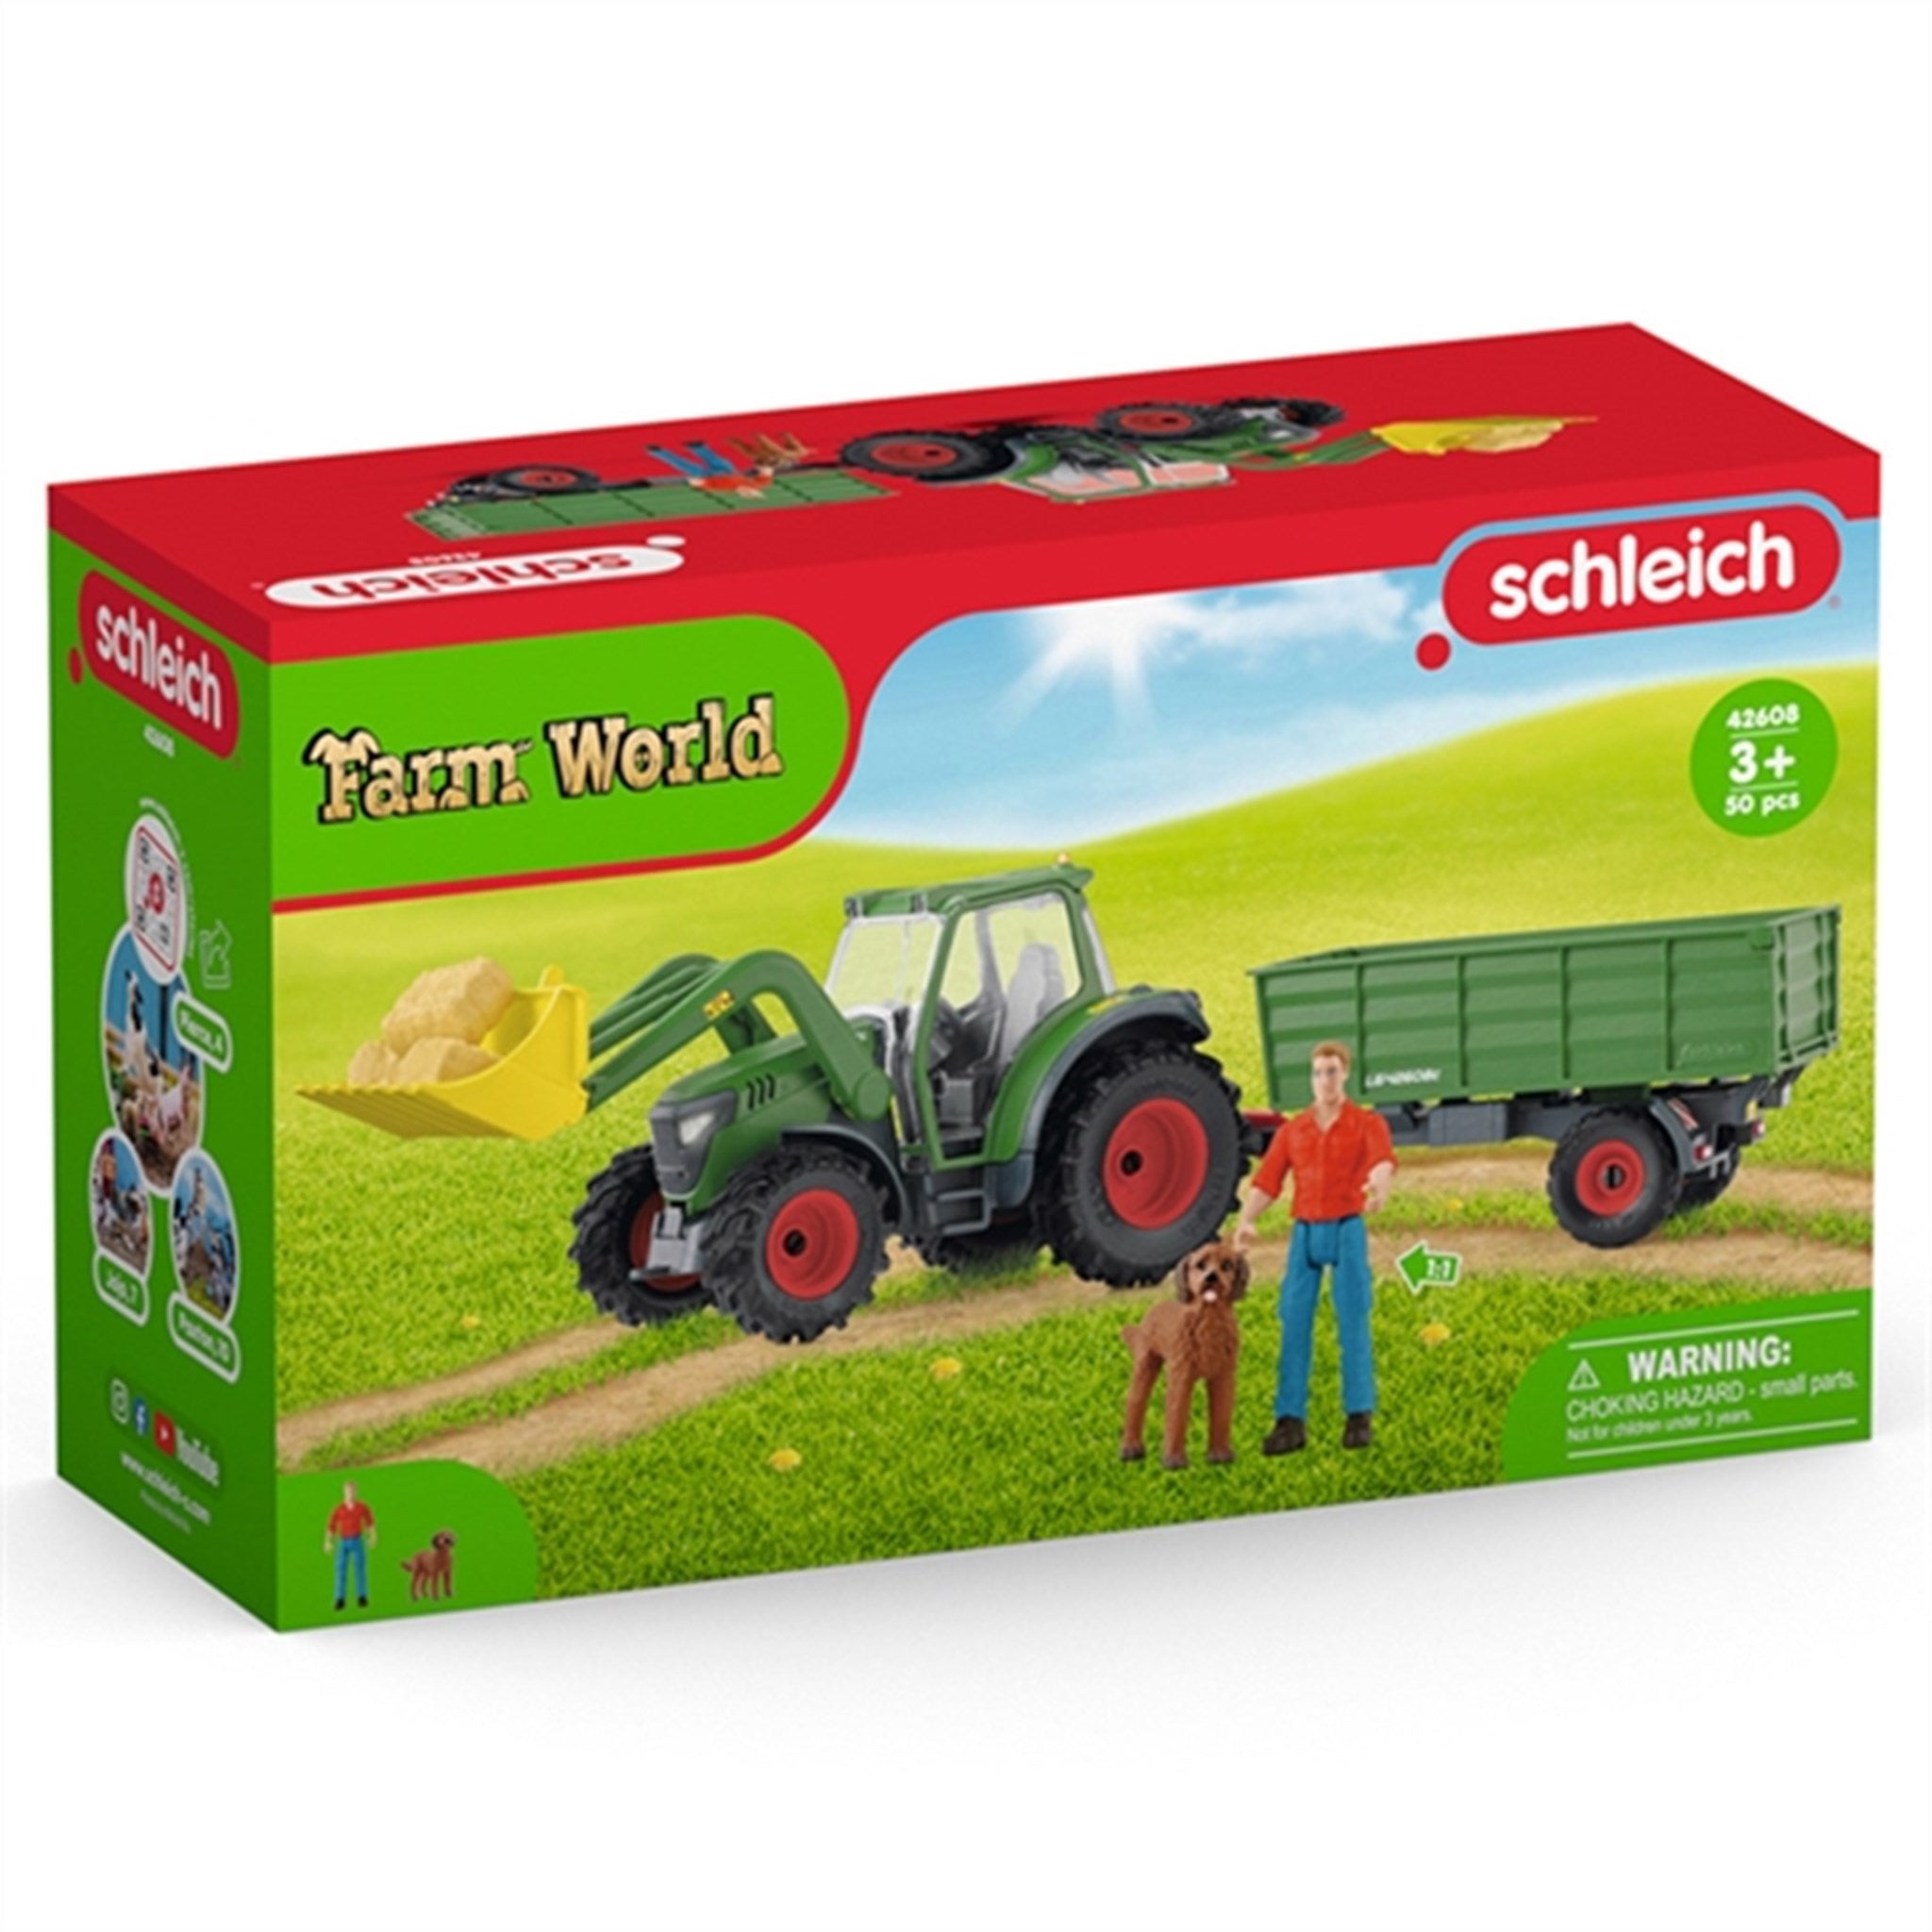 Schleich Farm World Tractor with Trailer 4